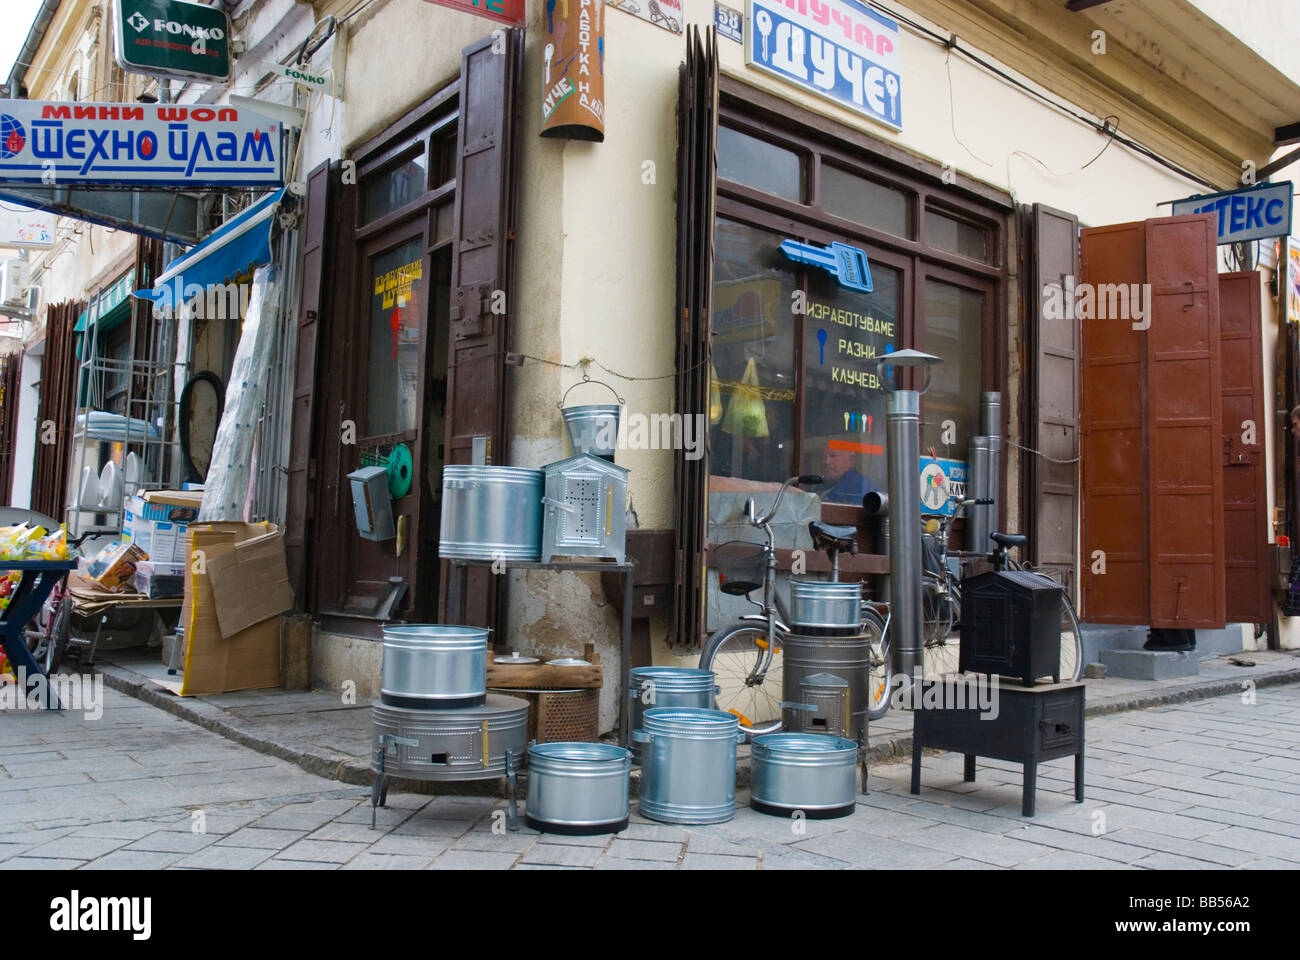 Boutique vendant des barbecues skara dans le vieux bazar de Skopje Macédoine Europe Banque D'Images